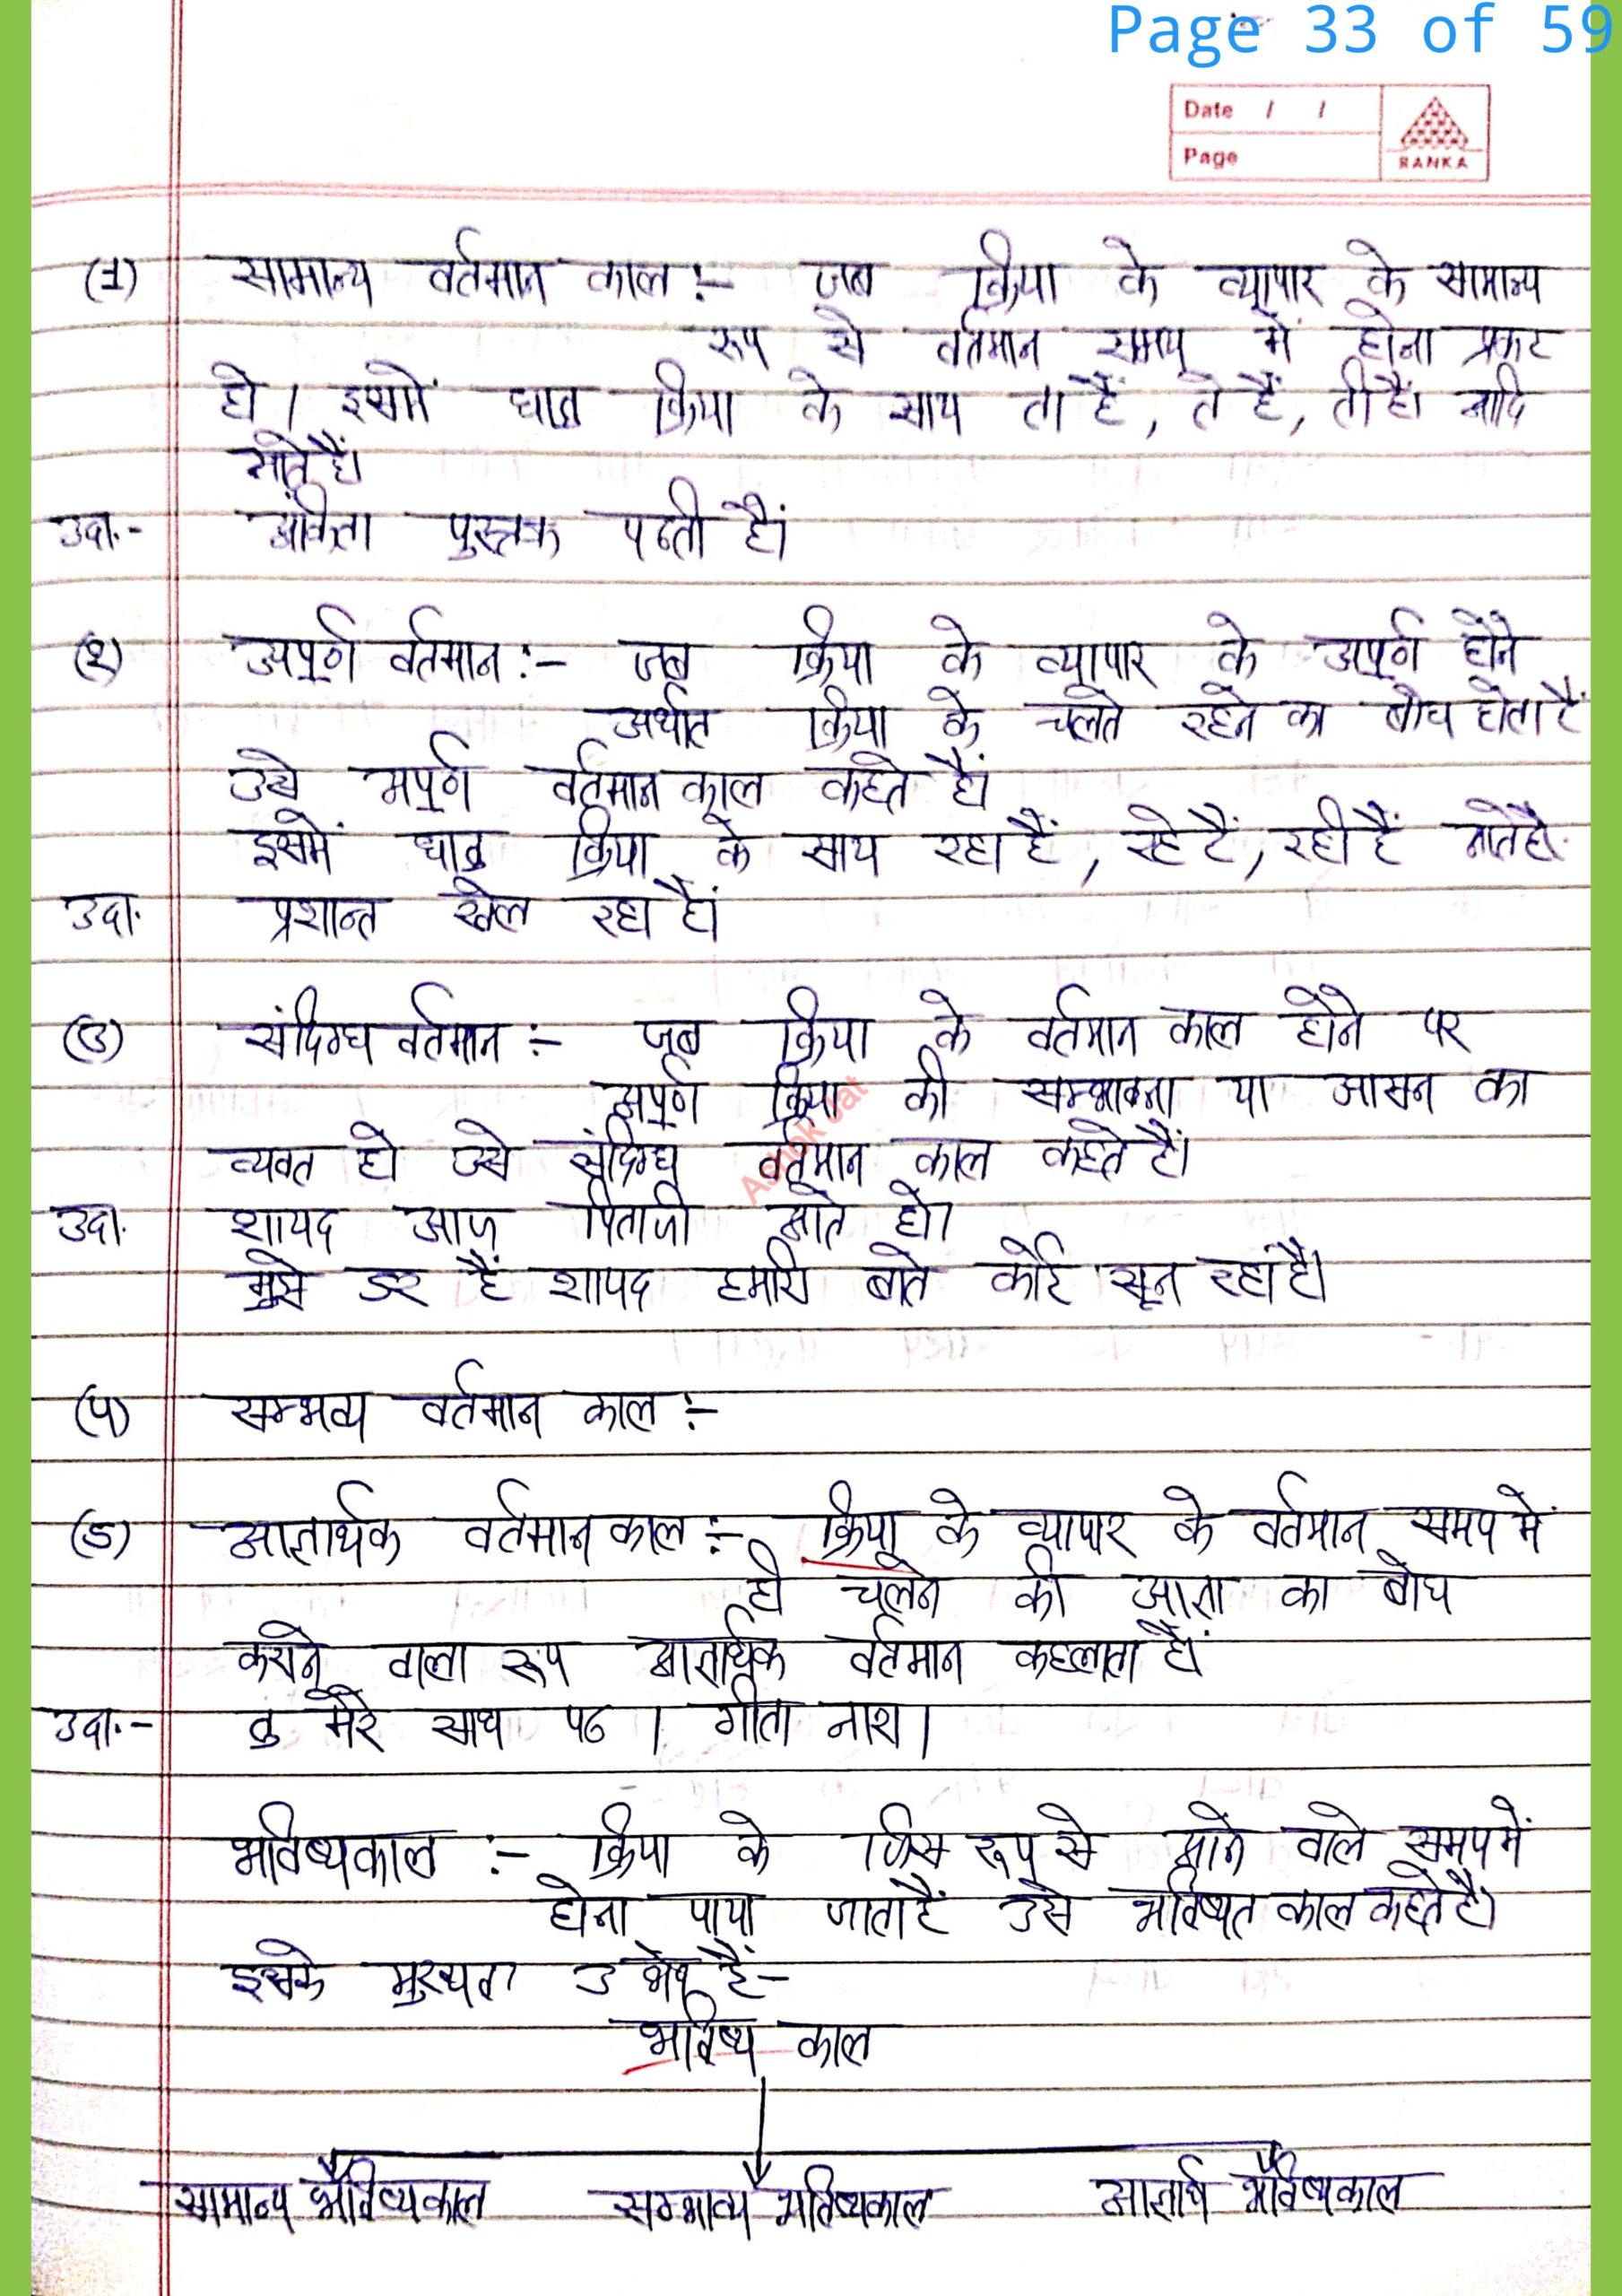 cloud computing notes in hindi pdf